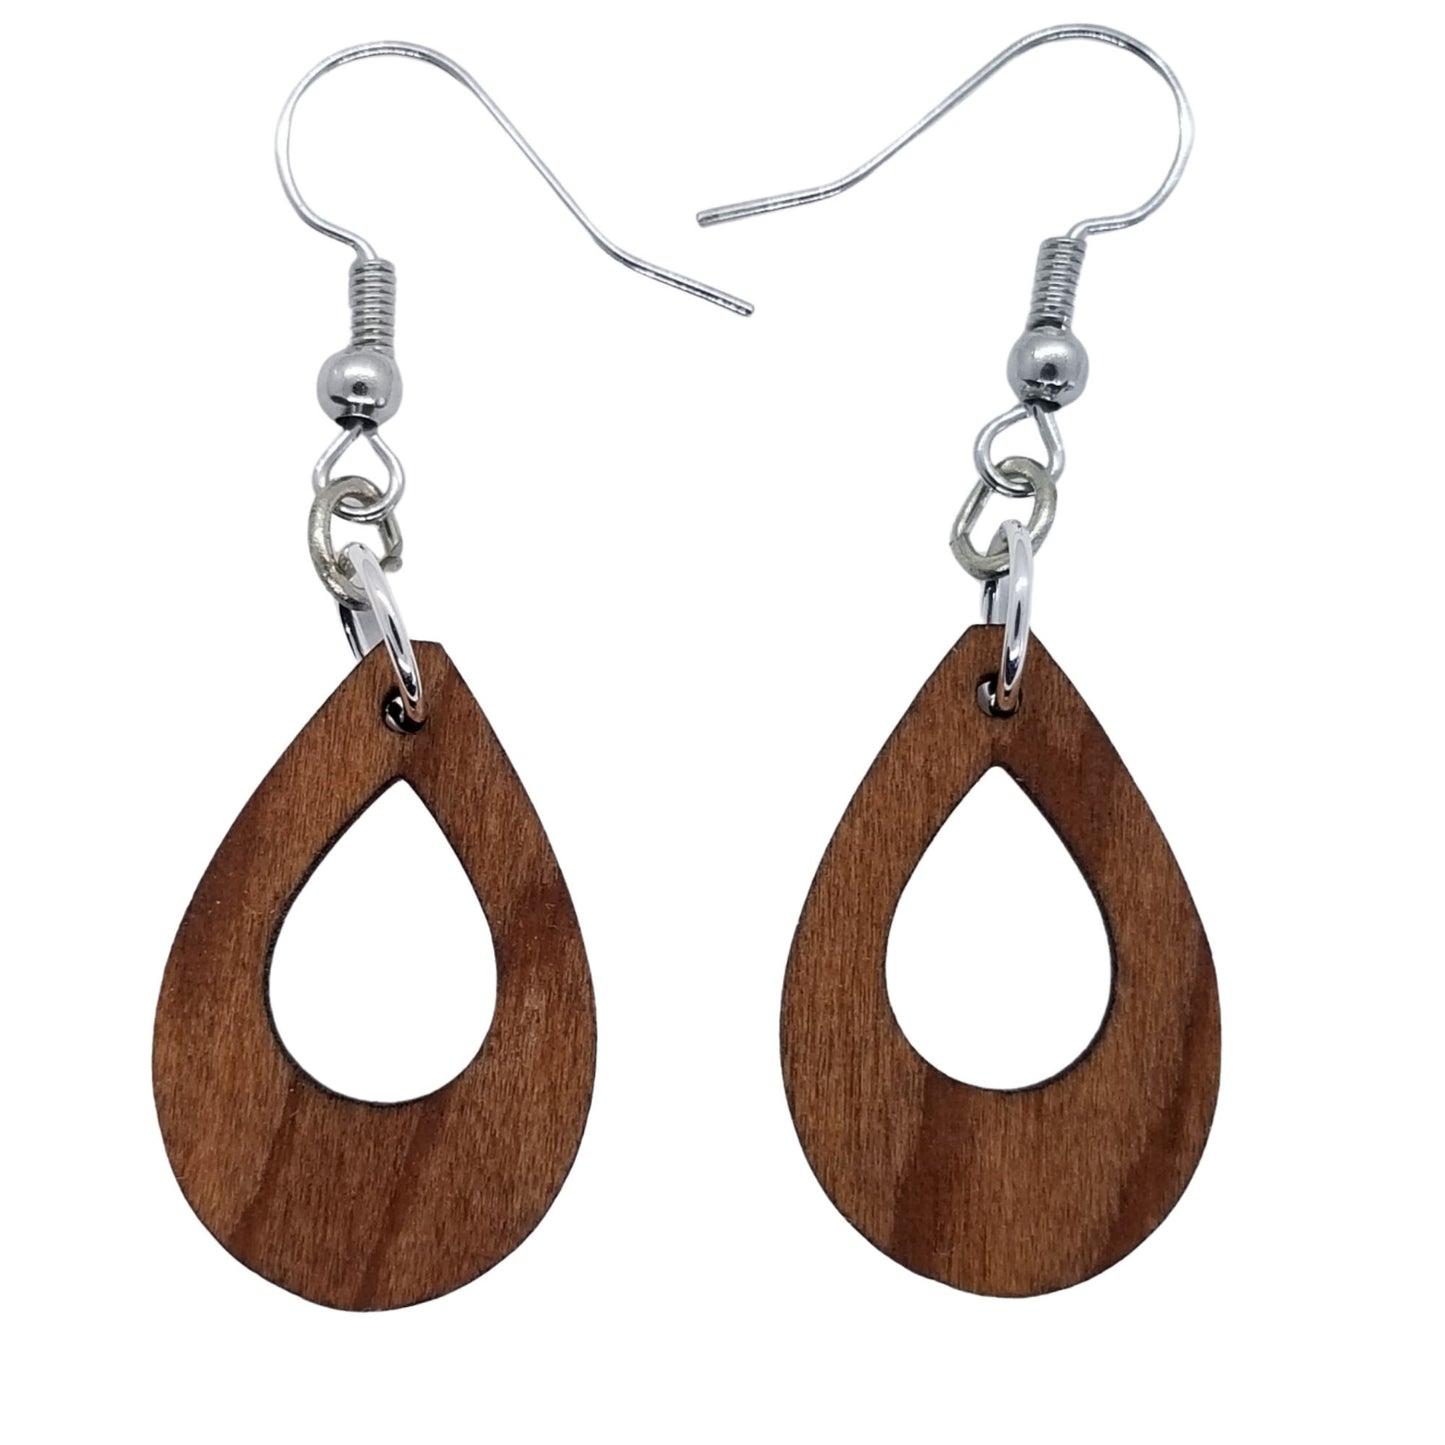 Redwood Earrings - Cutout Teardrop Earrings - California Redwood Dangle Earrings - CA Souvenir Keepsake - Wood Earrings - Wood Gift Women